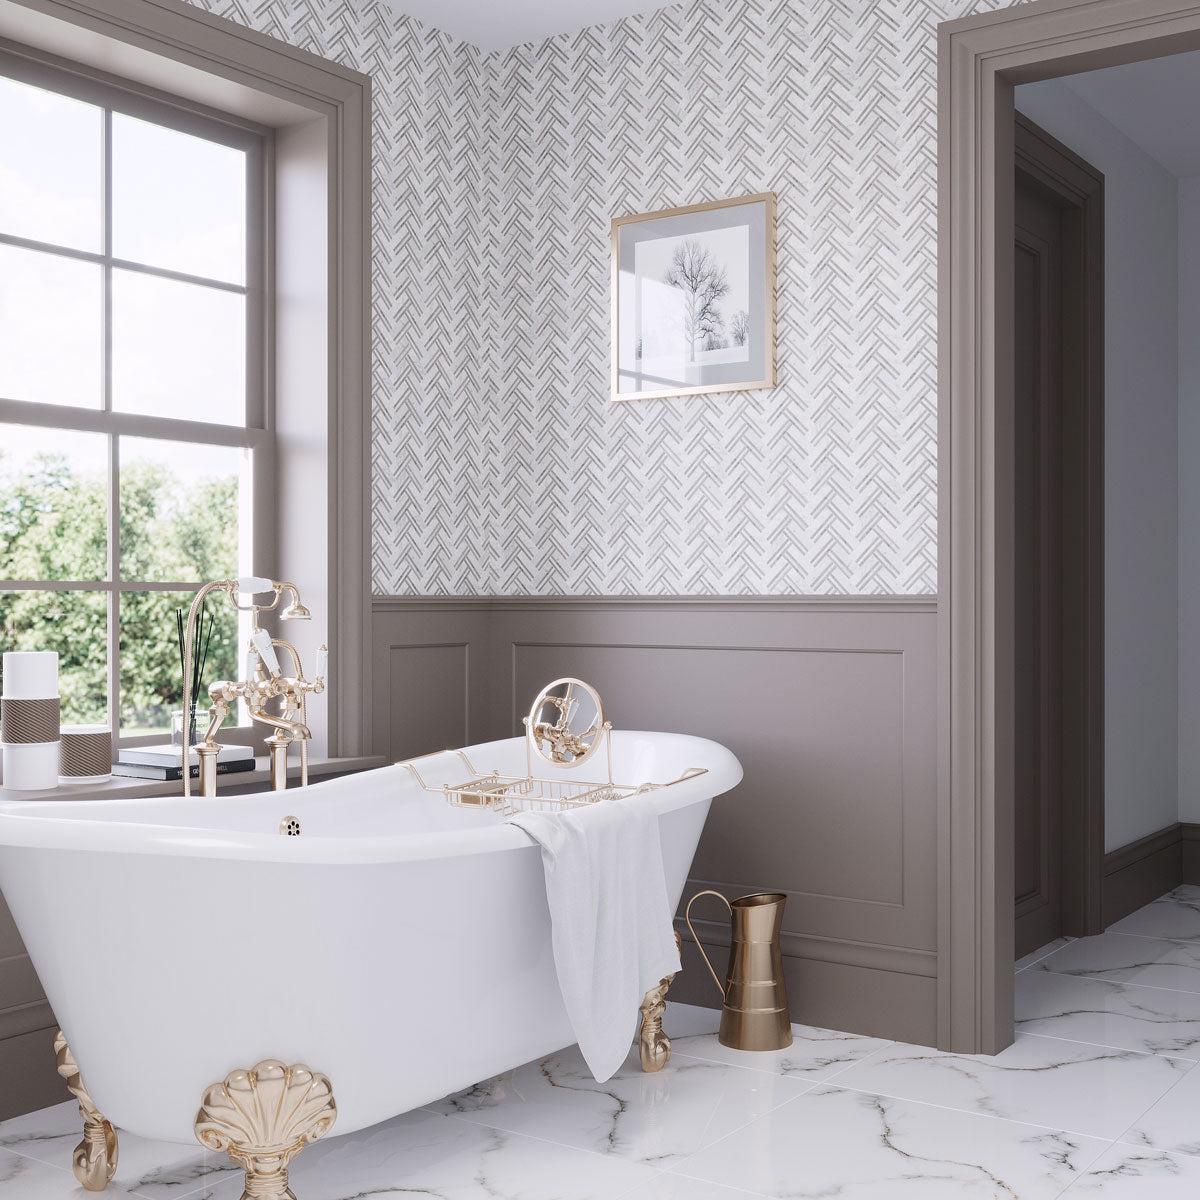 Bathroom with Nova Herringbone Beige Marble Tile Walls instead of Patterned Wallpaper